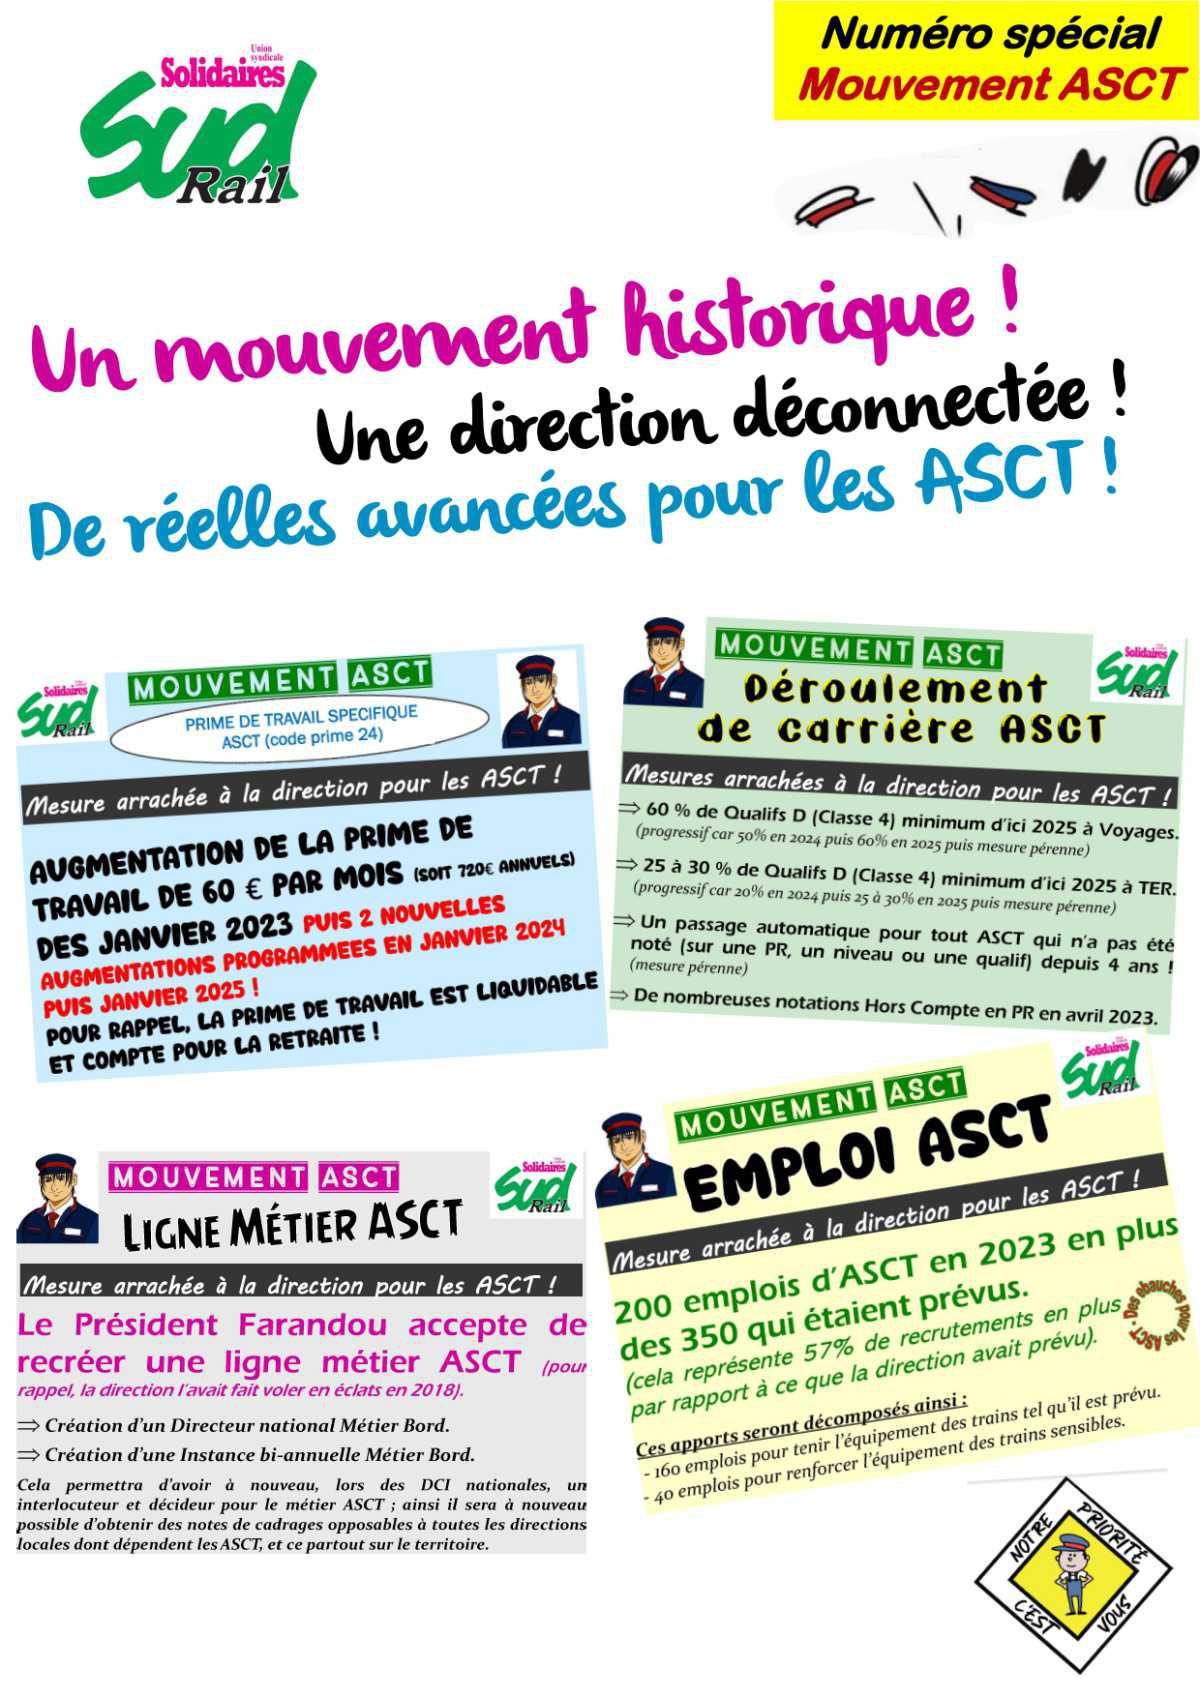 ASCT - Un mouvement de grève historique !